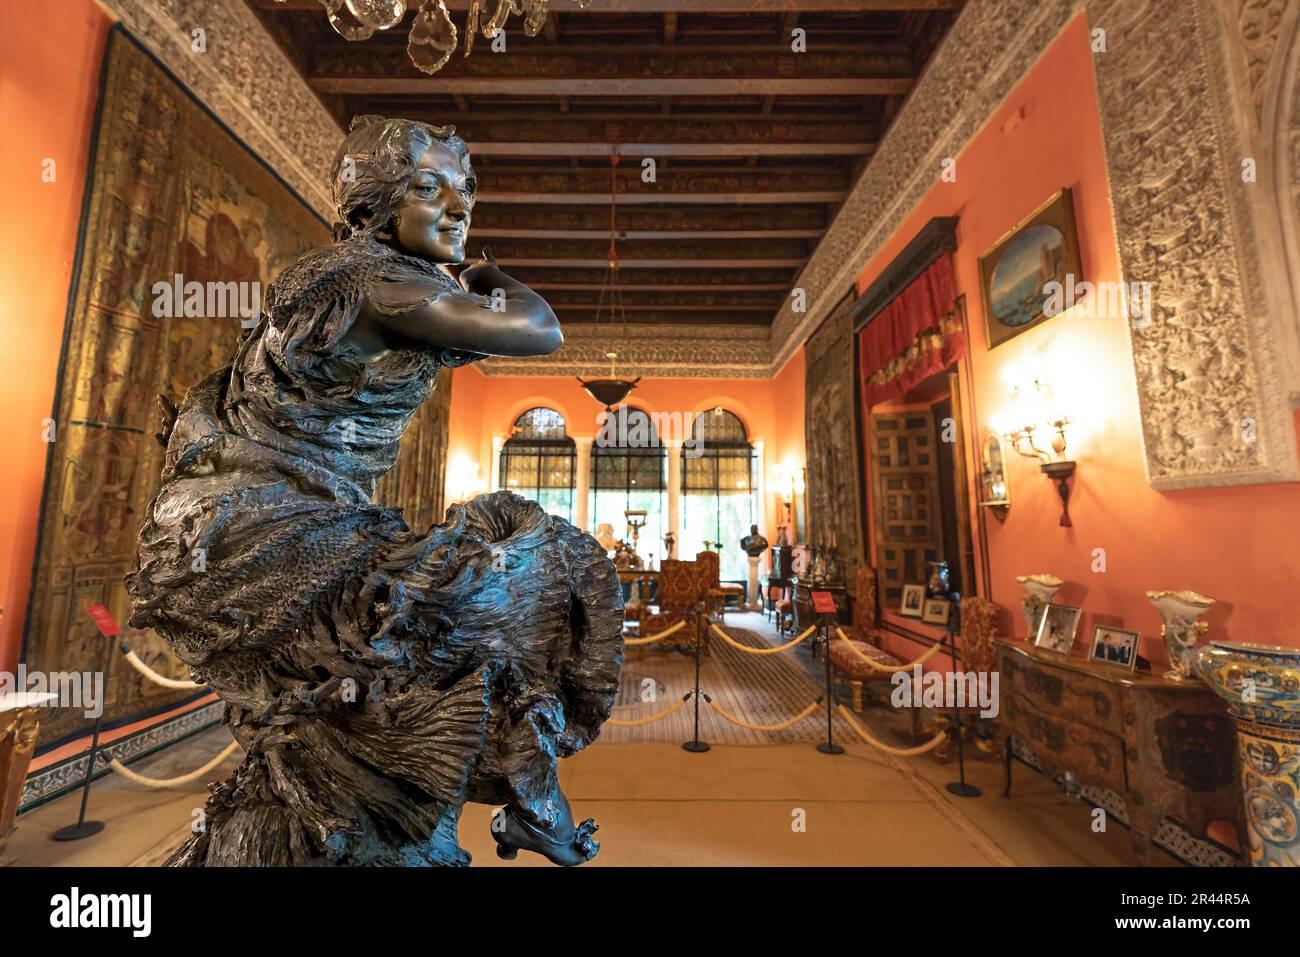 Danse flamenco Sculpture au salon de la Gitana (Gypsy Hall) au Palais Las Duenas (Palacio de las Duenas) - Séville, Andalousie, Espagne Banque D'Images